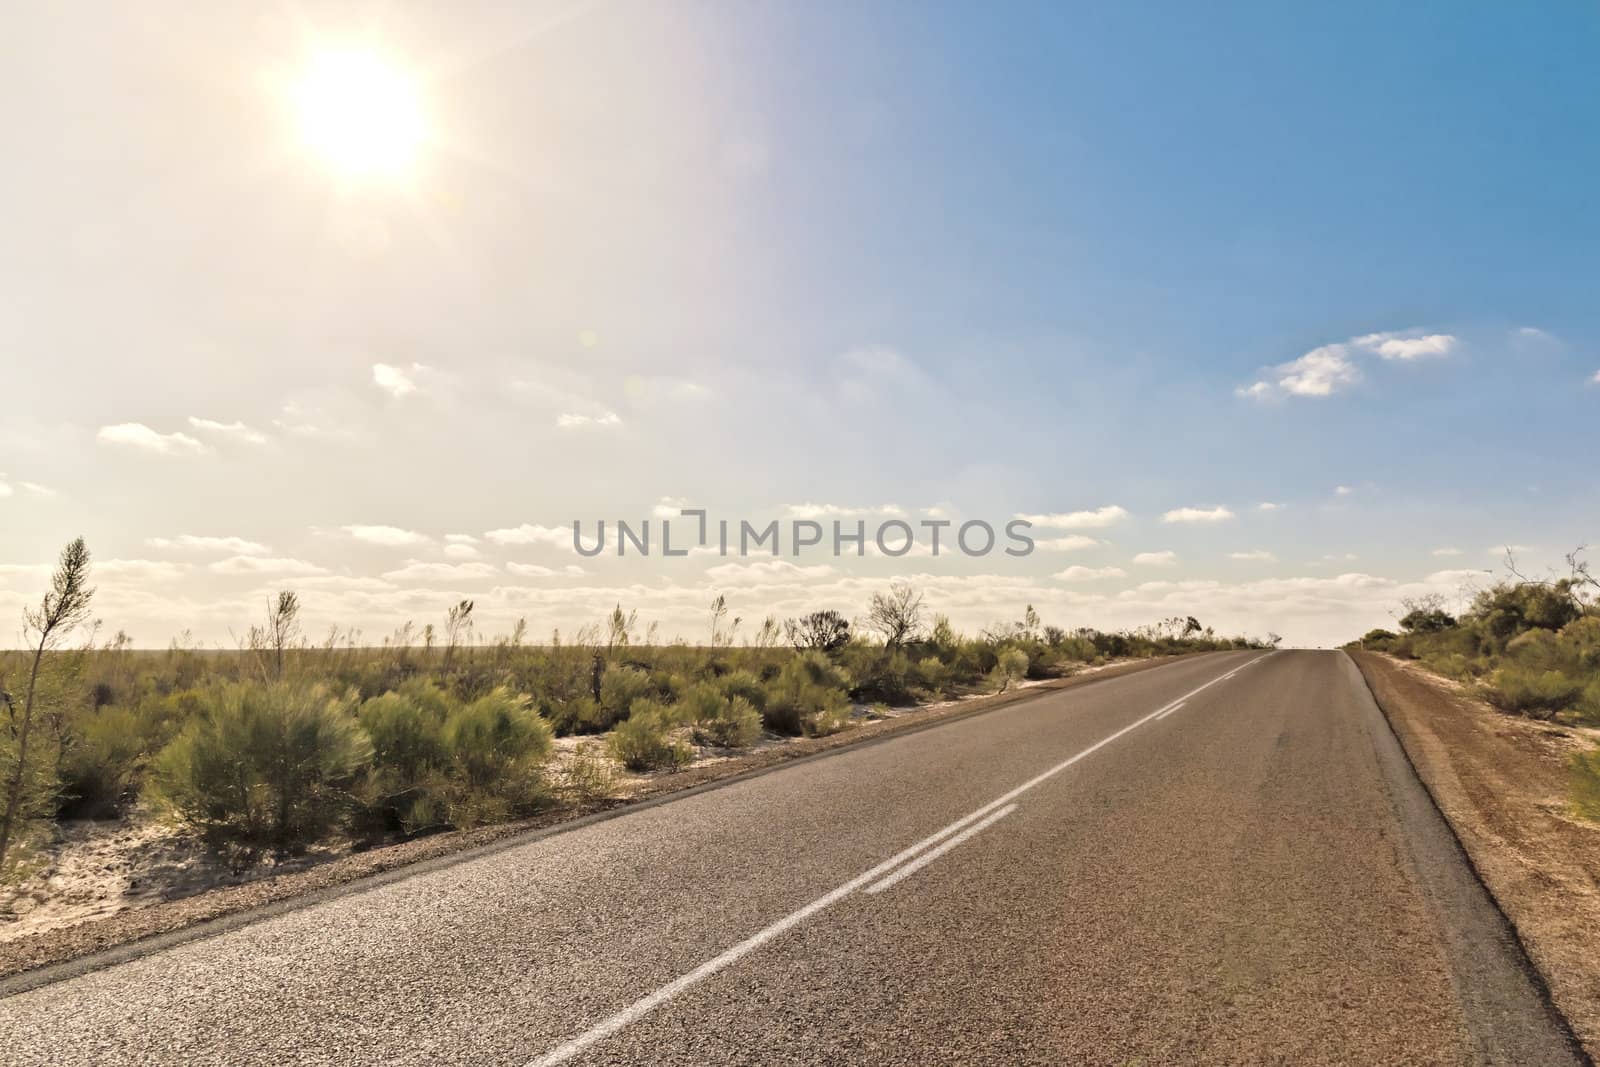 An image of an Australian desert road